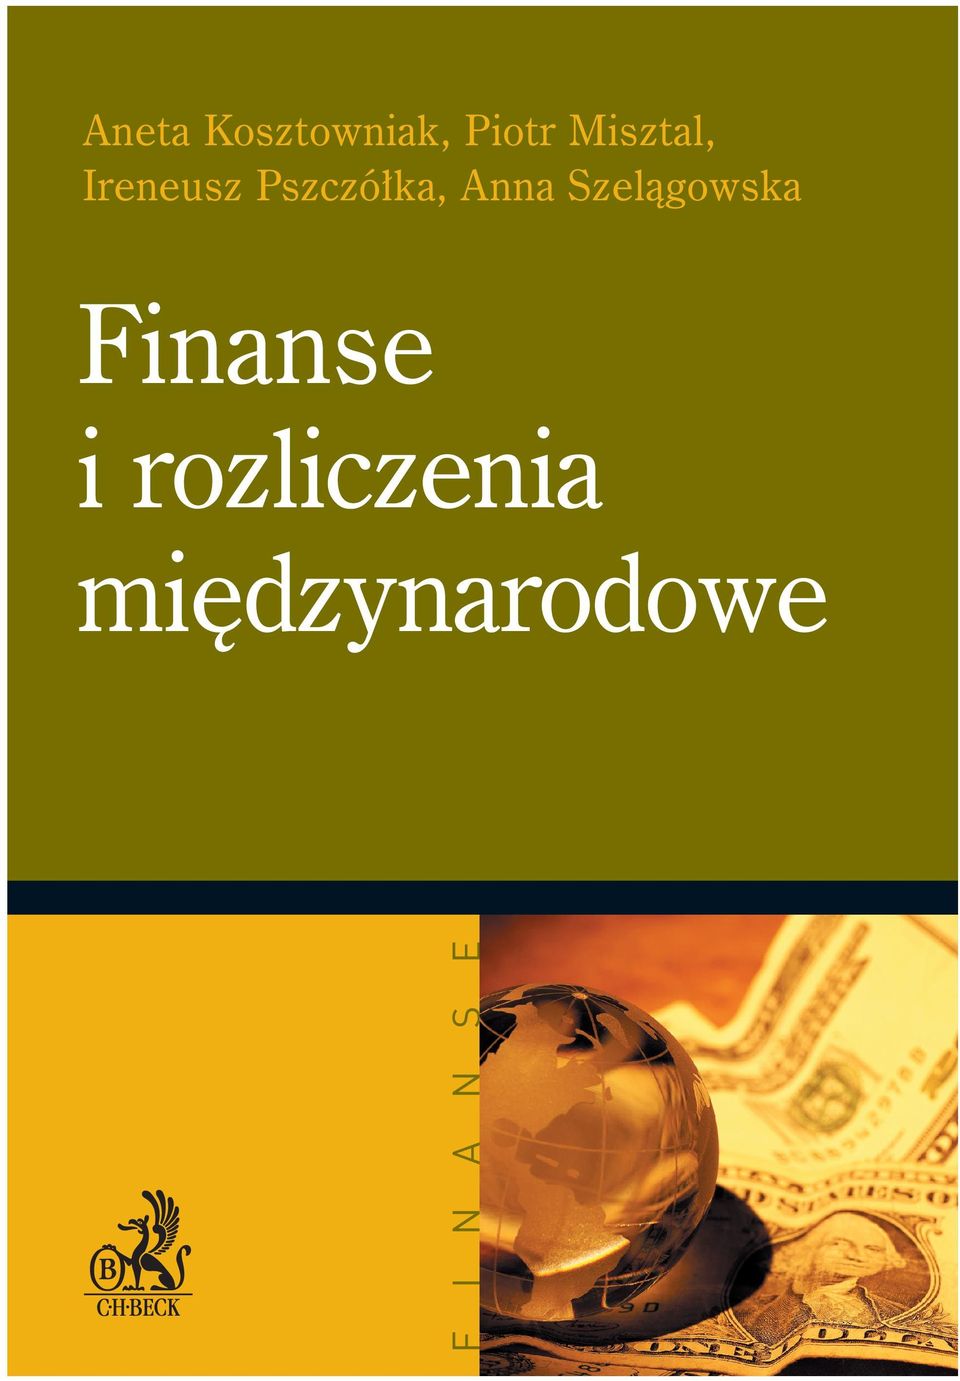 Anna Szelàgowska Finanse i